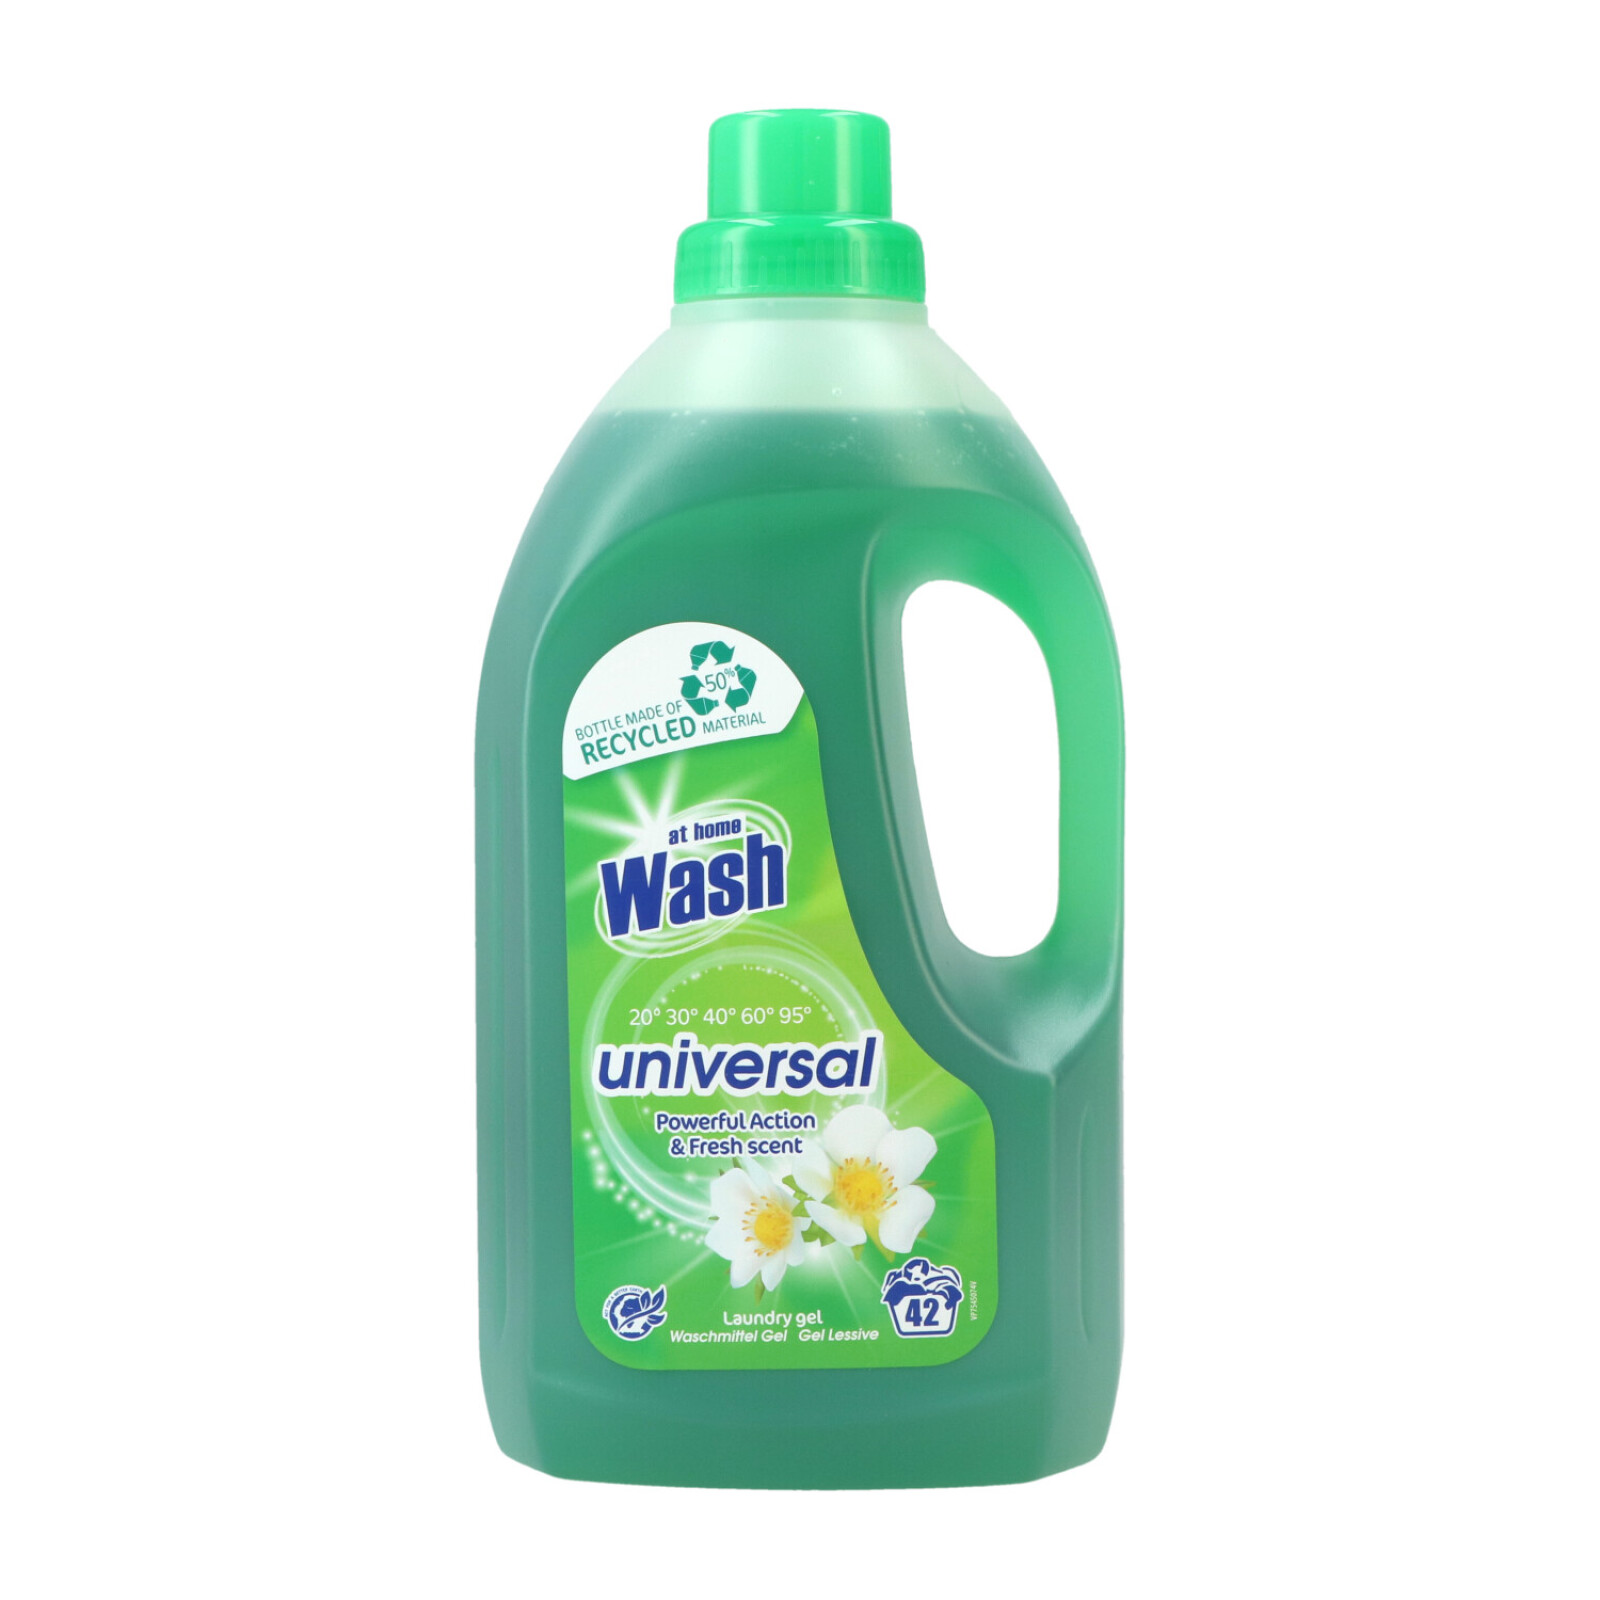 At Home Wash Flüssigwaschmittel GEL! 1.5ltr Universal 42WL